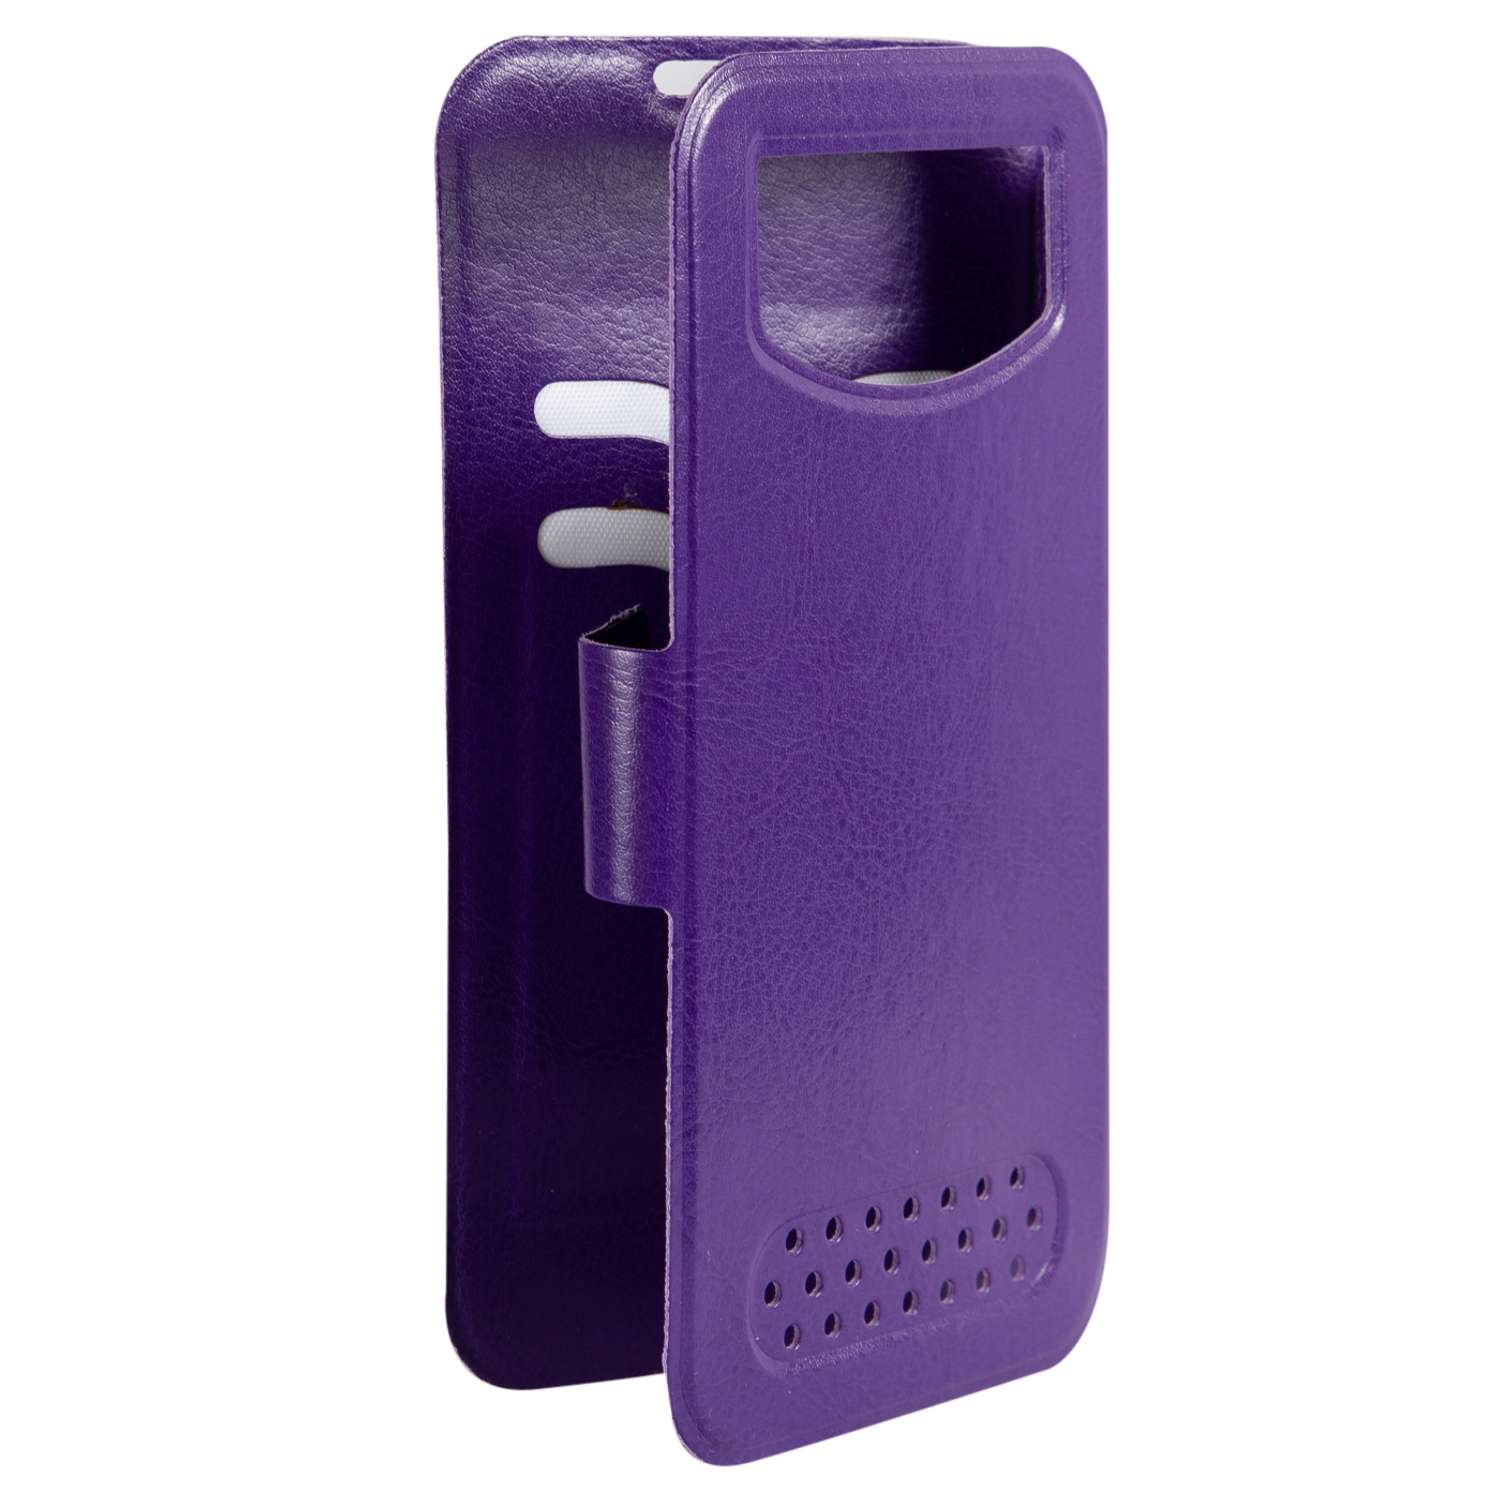 Чехол универсальный iBox Universal для телефонов 4.2-5 дюйма фиолетовый - фото 2